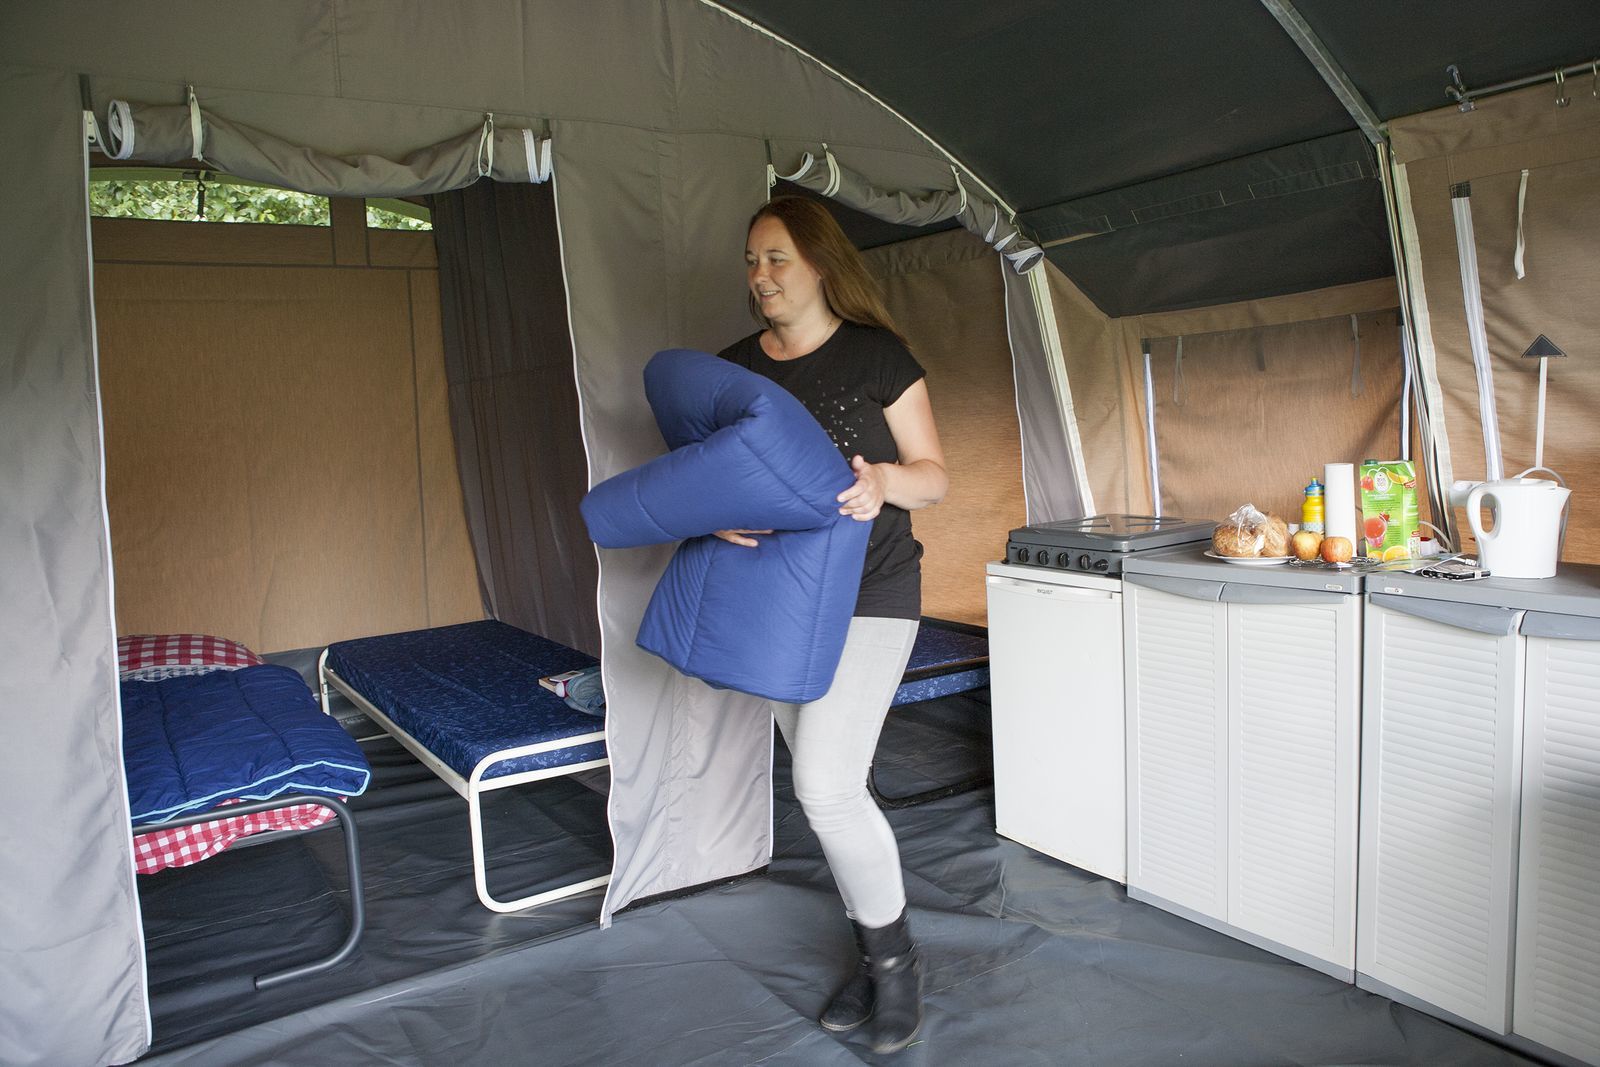 4-person Lodge tent